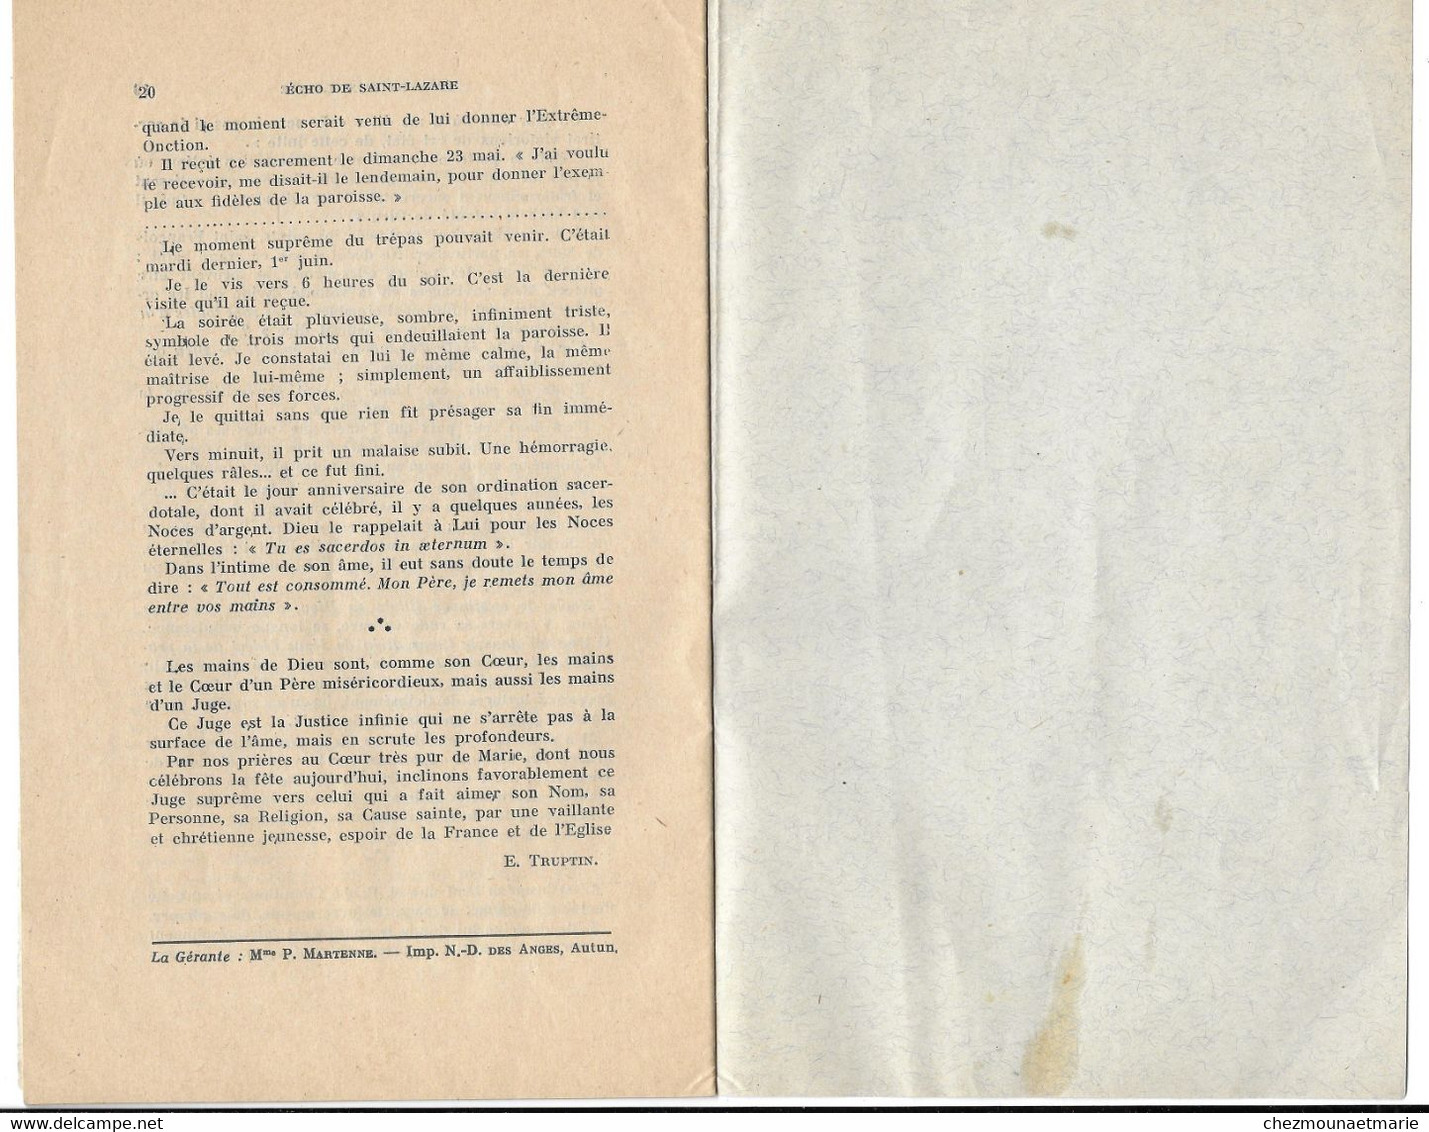 1937 CATHEDRALE D AUTUN - ECHO DE SAINT LAZARE - BULLETIN DE 20 PAGES - Godsdienst